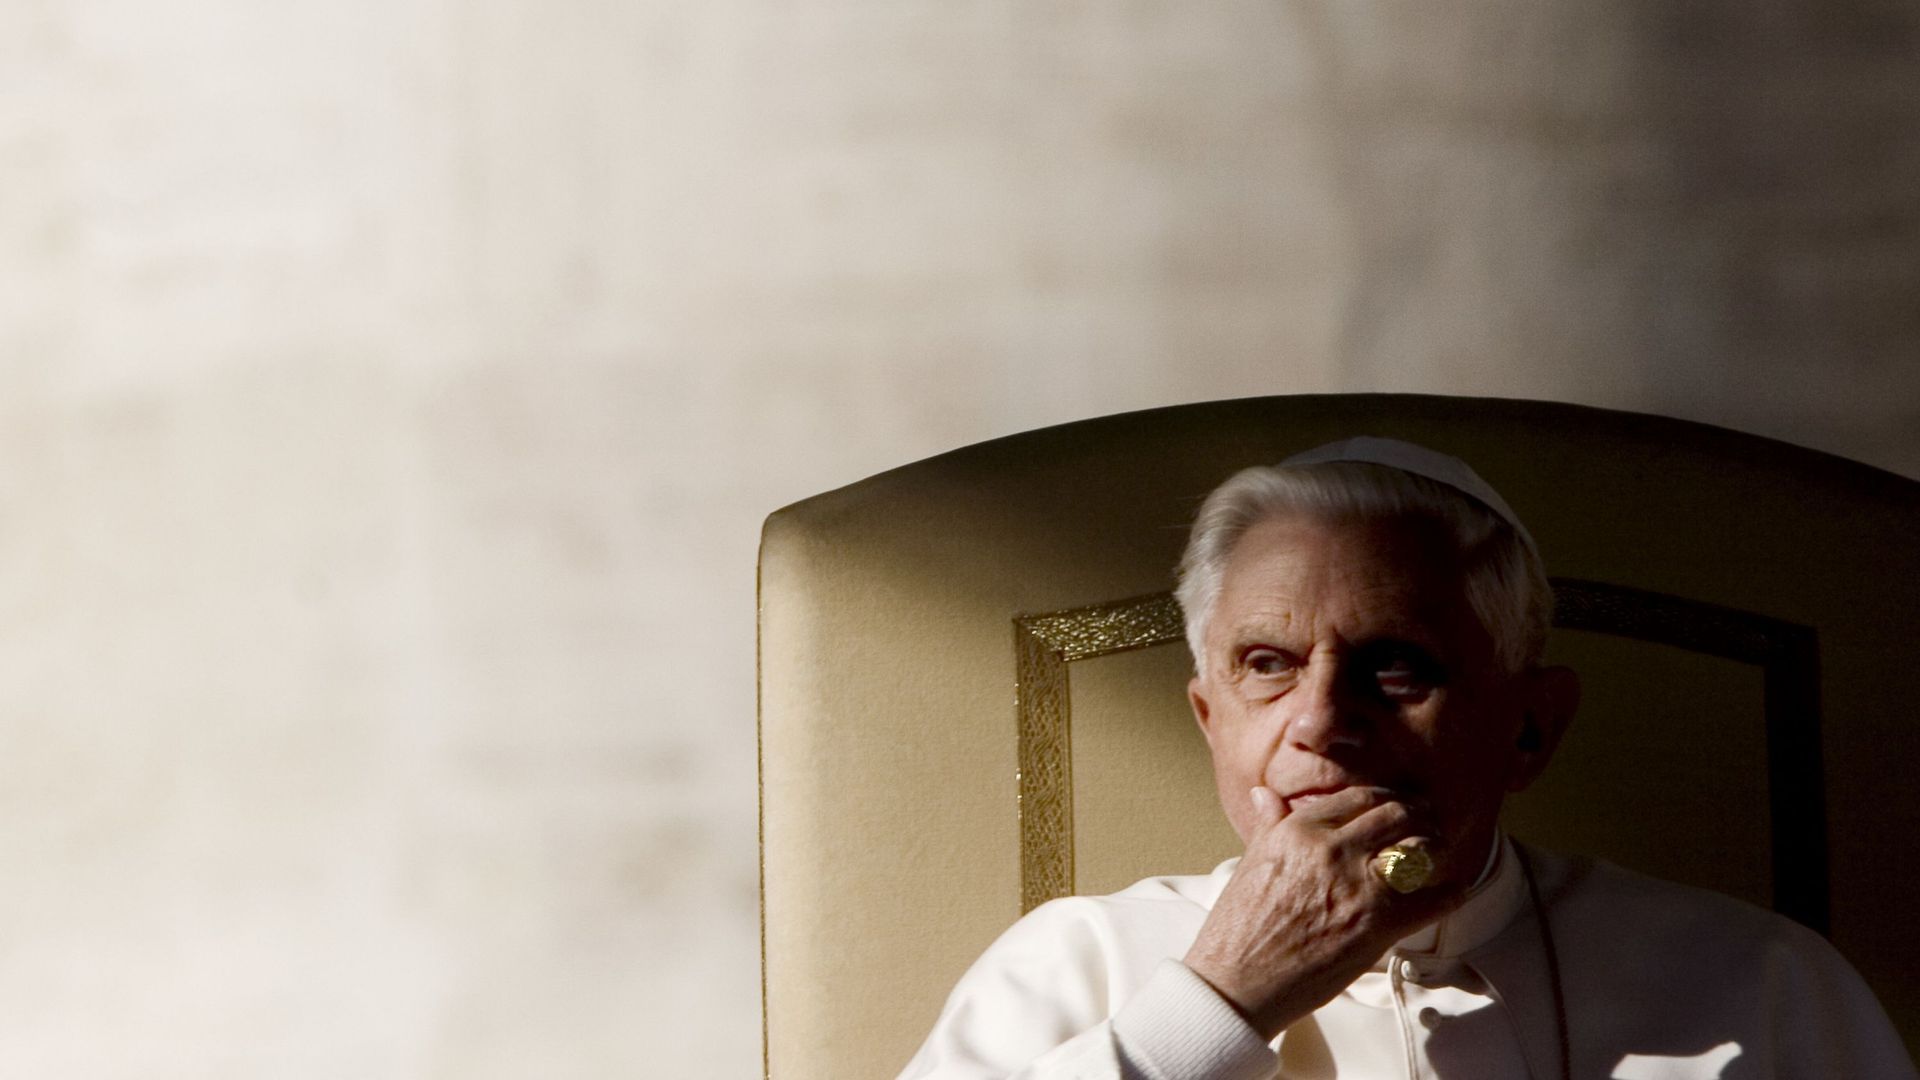 Accusé d'inaction, Benoit XVI "exprime son choc et sa honte" vis-à-vis de la pédocriminalité dans l'église allemande: